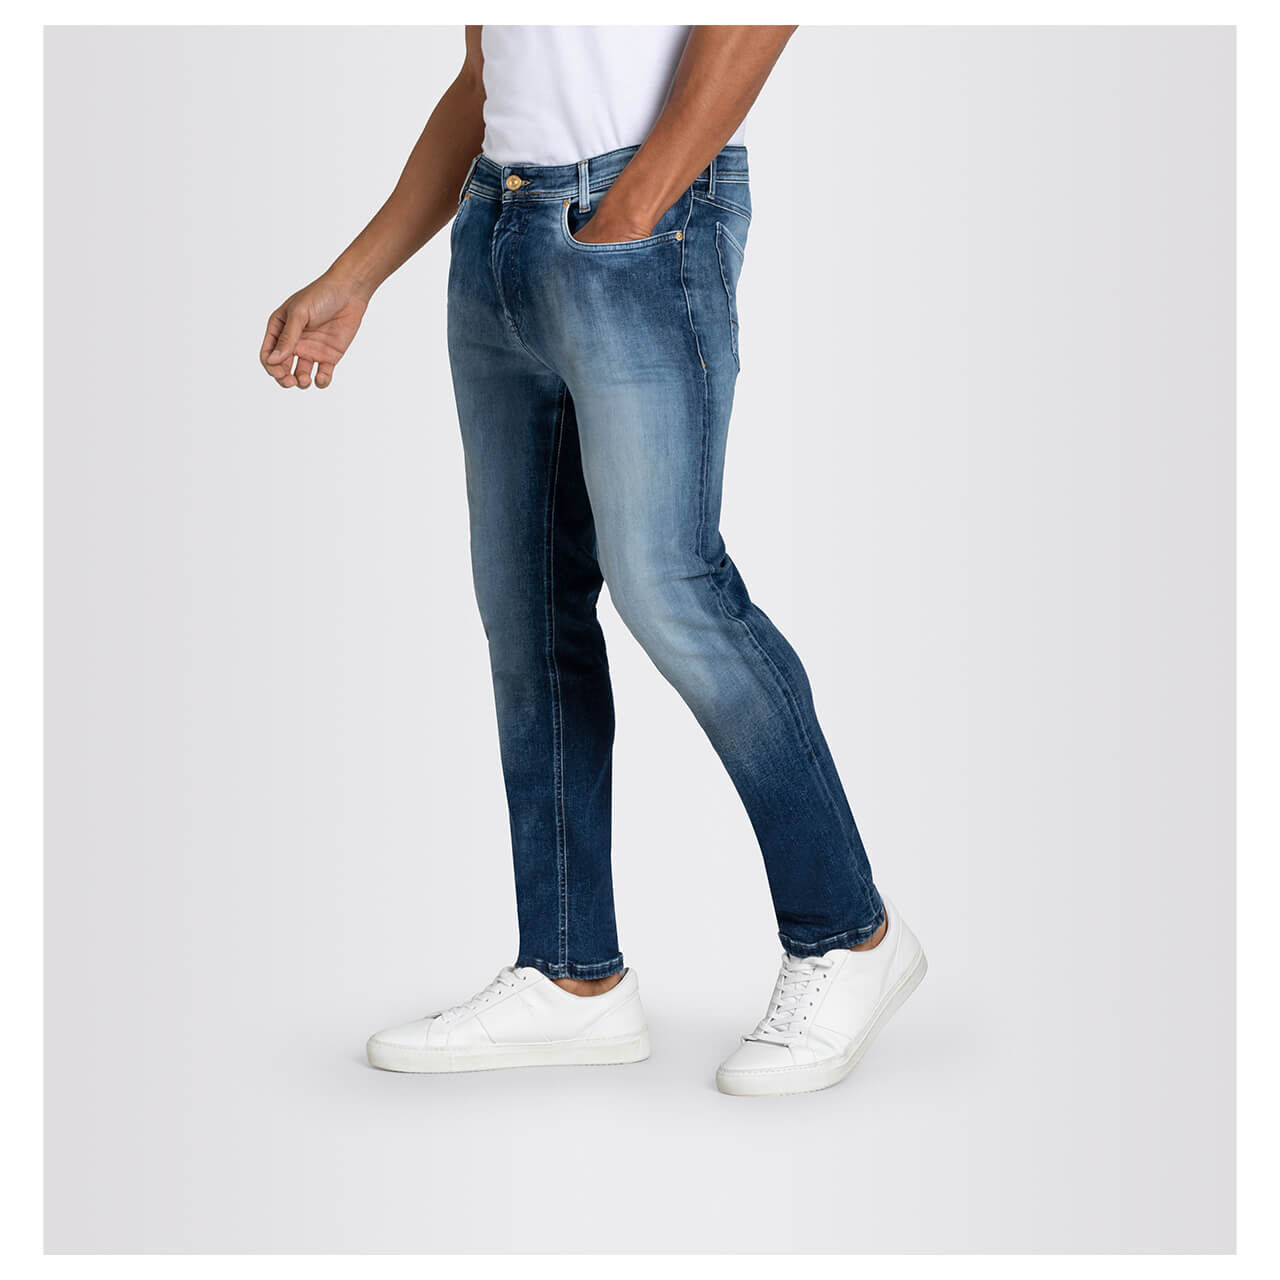 MAC Flexx Jeans 3D blue authentic wash